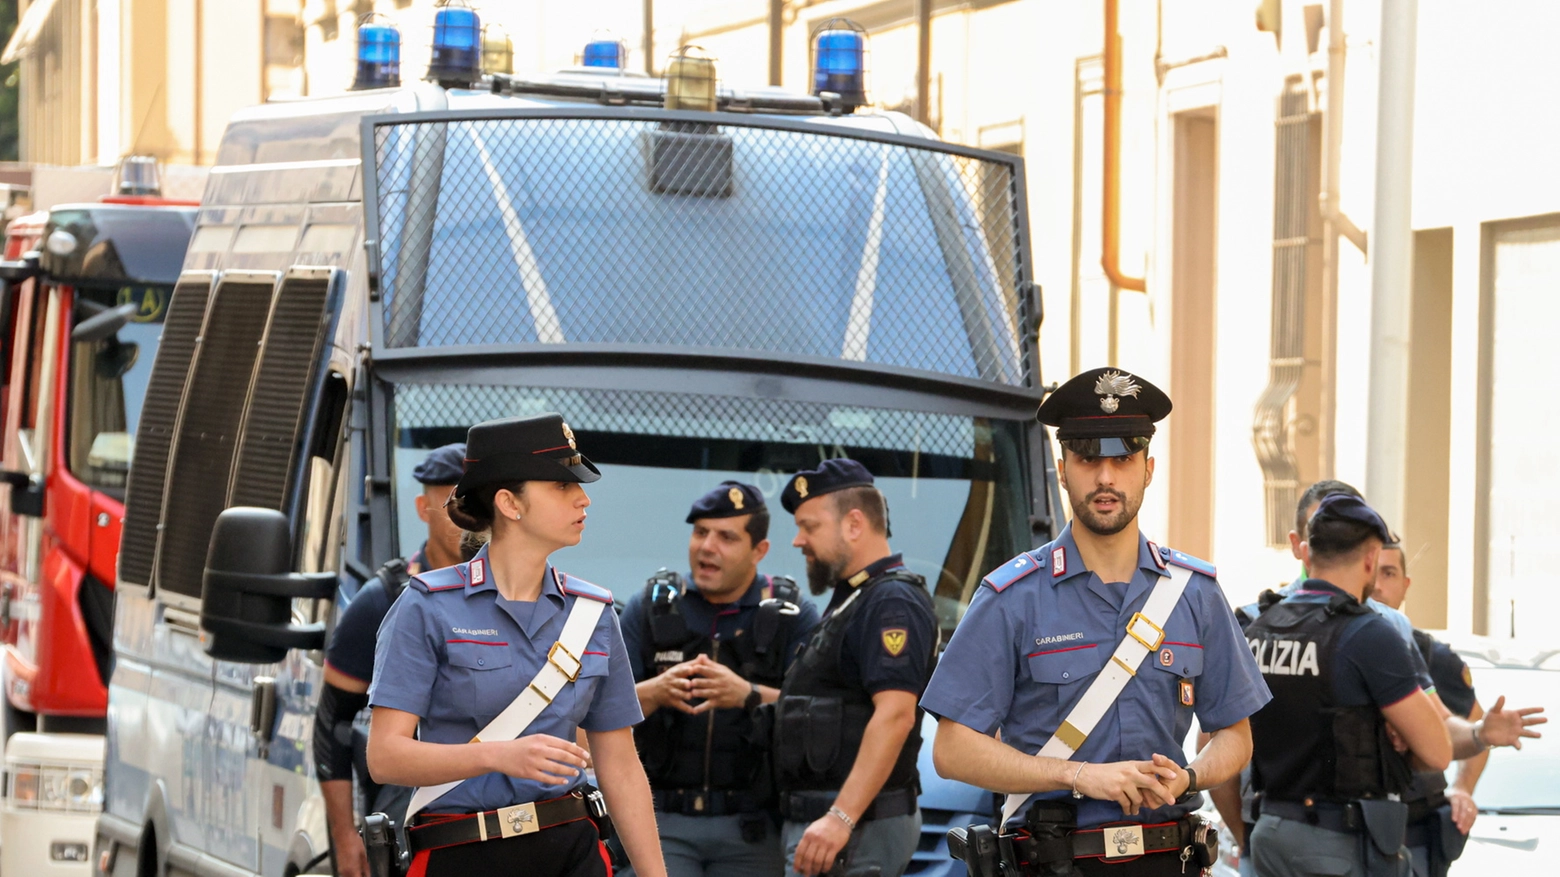 Carabinieri e polizia in un servizio di ordine pubblico